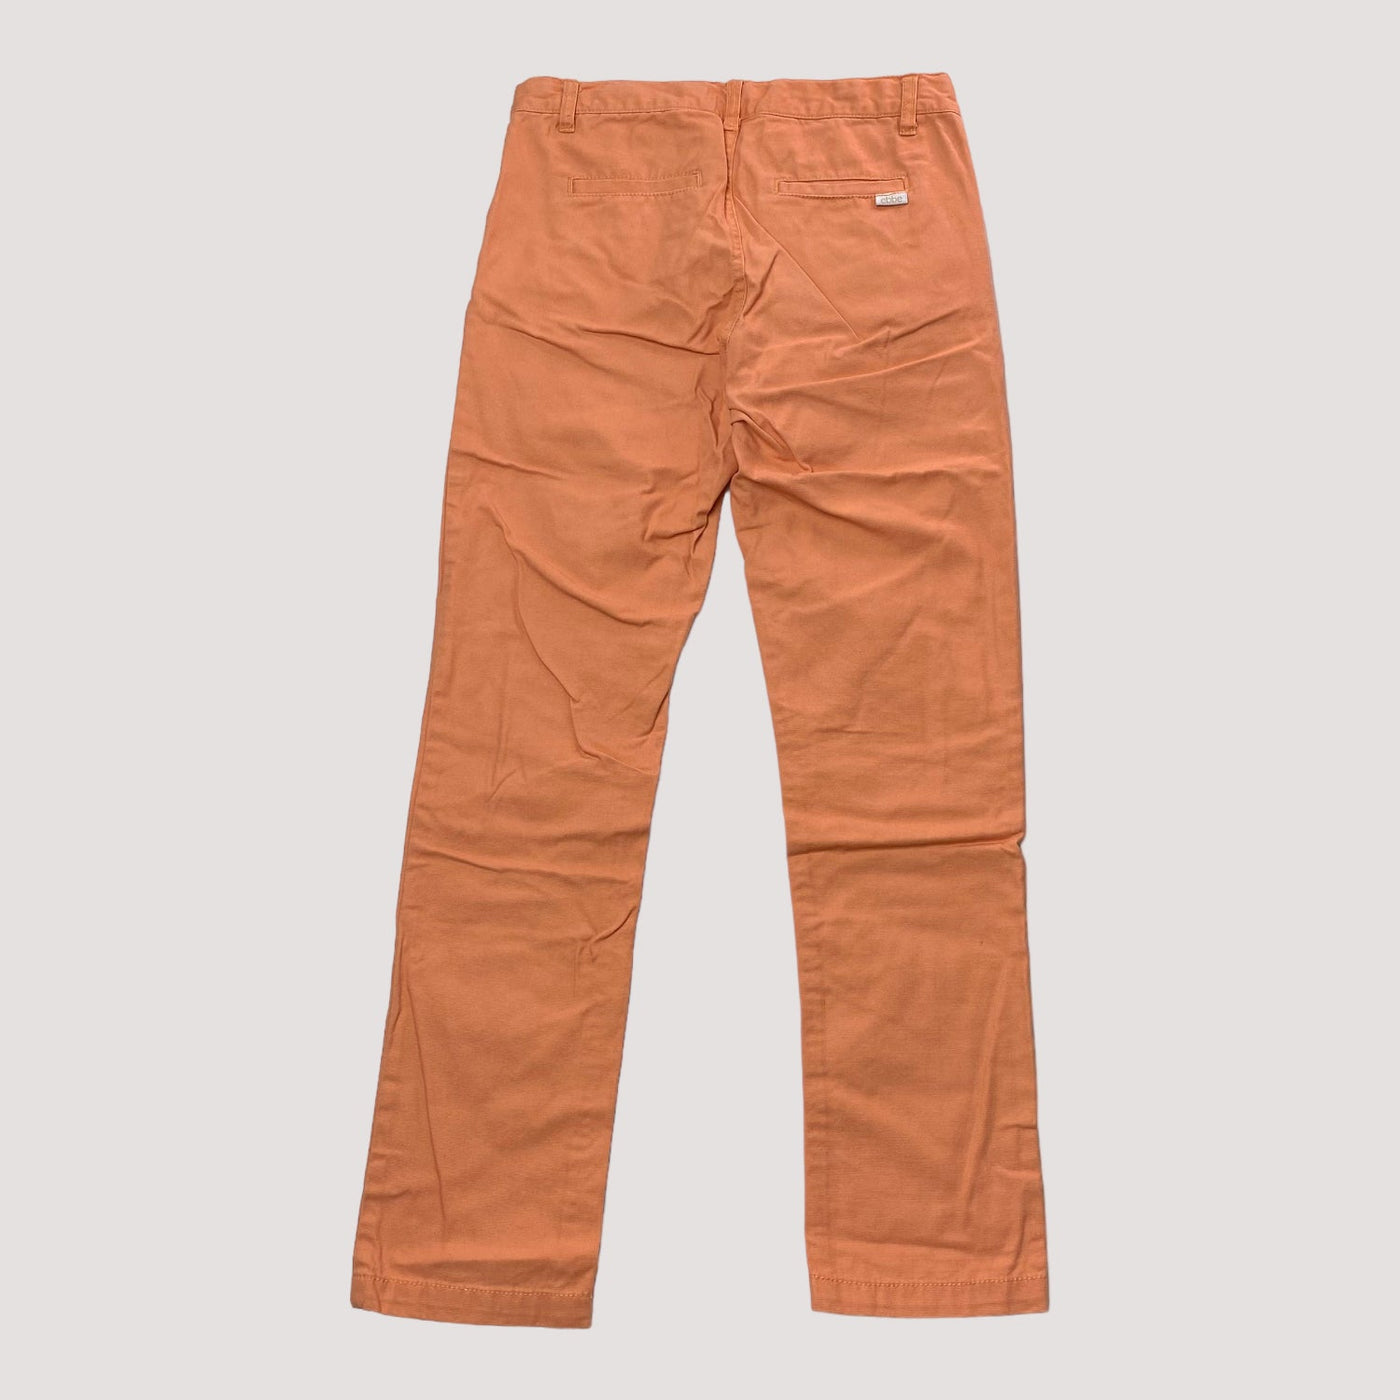 Ebbe cotton pants, coral | 152cm